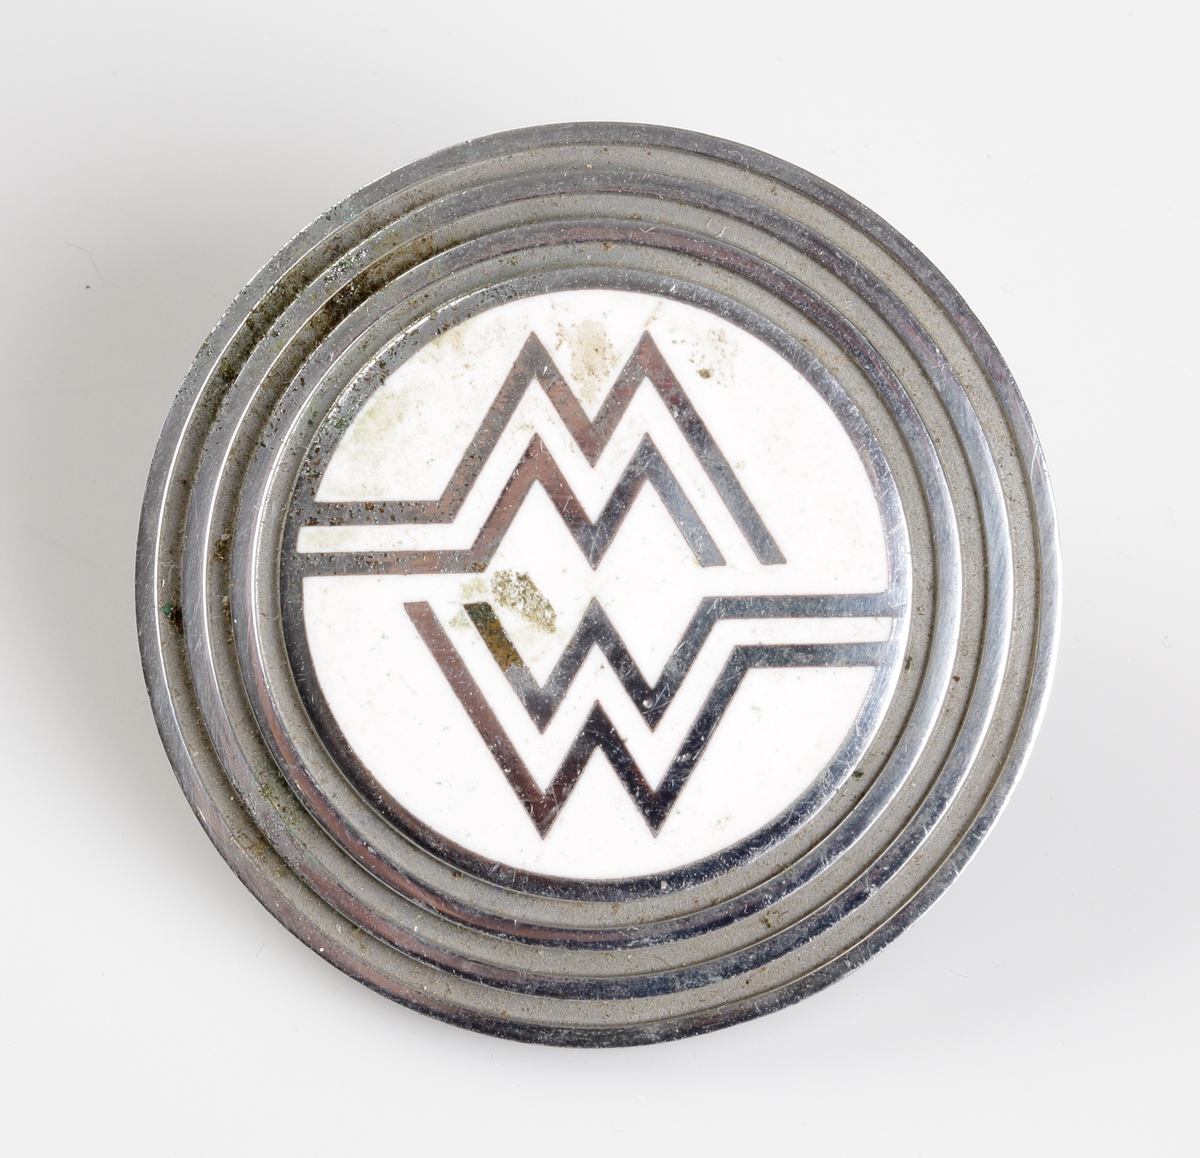 Emblem för detaljhandelsföretaget MW (Montgomery Ward).